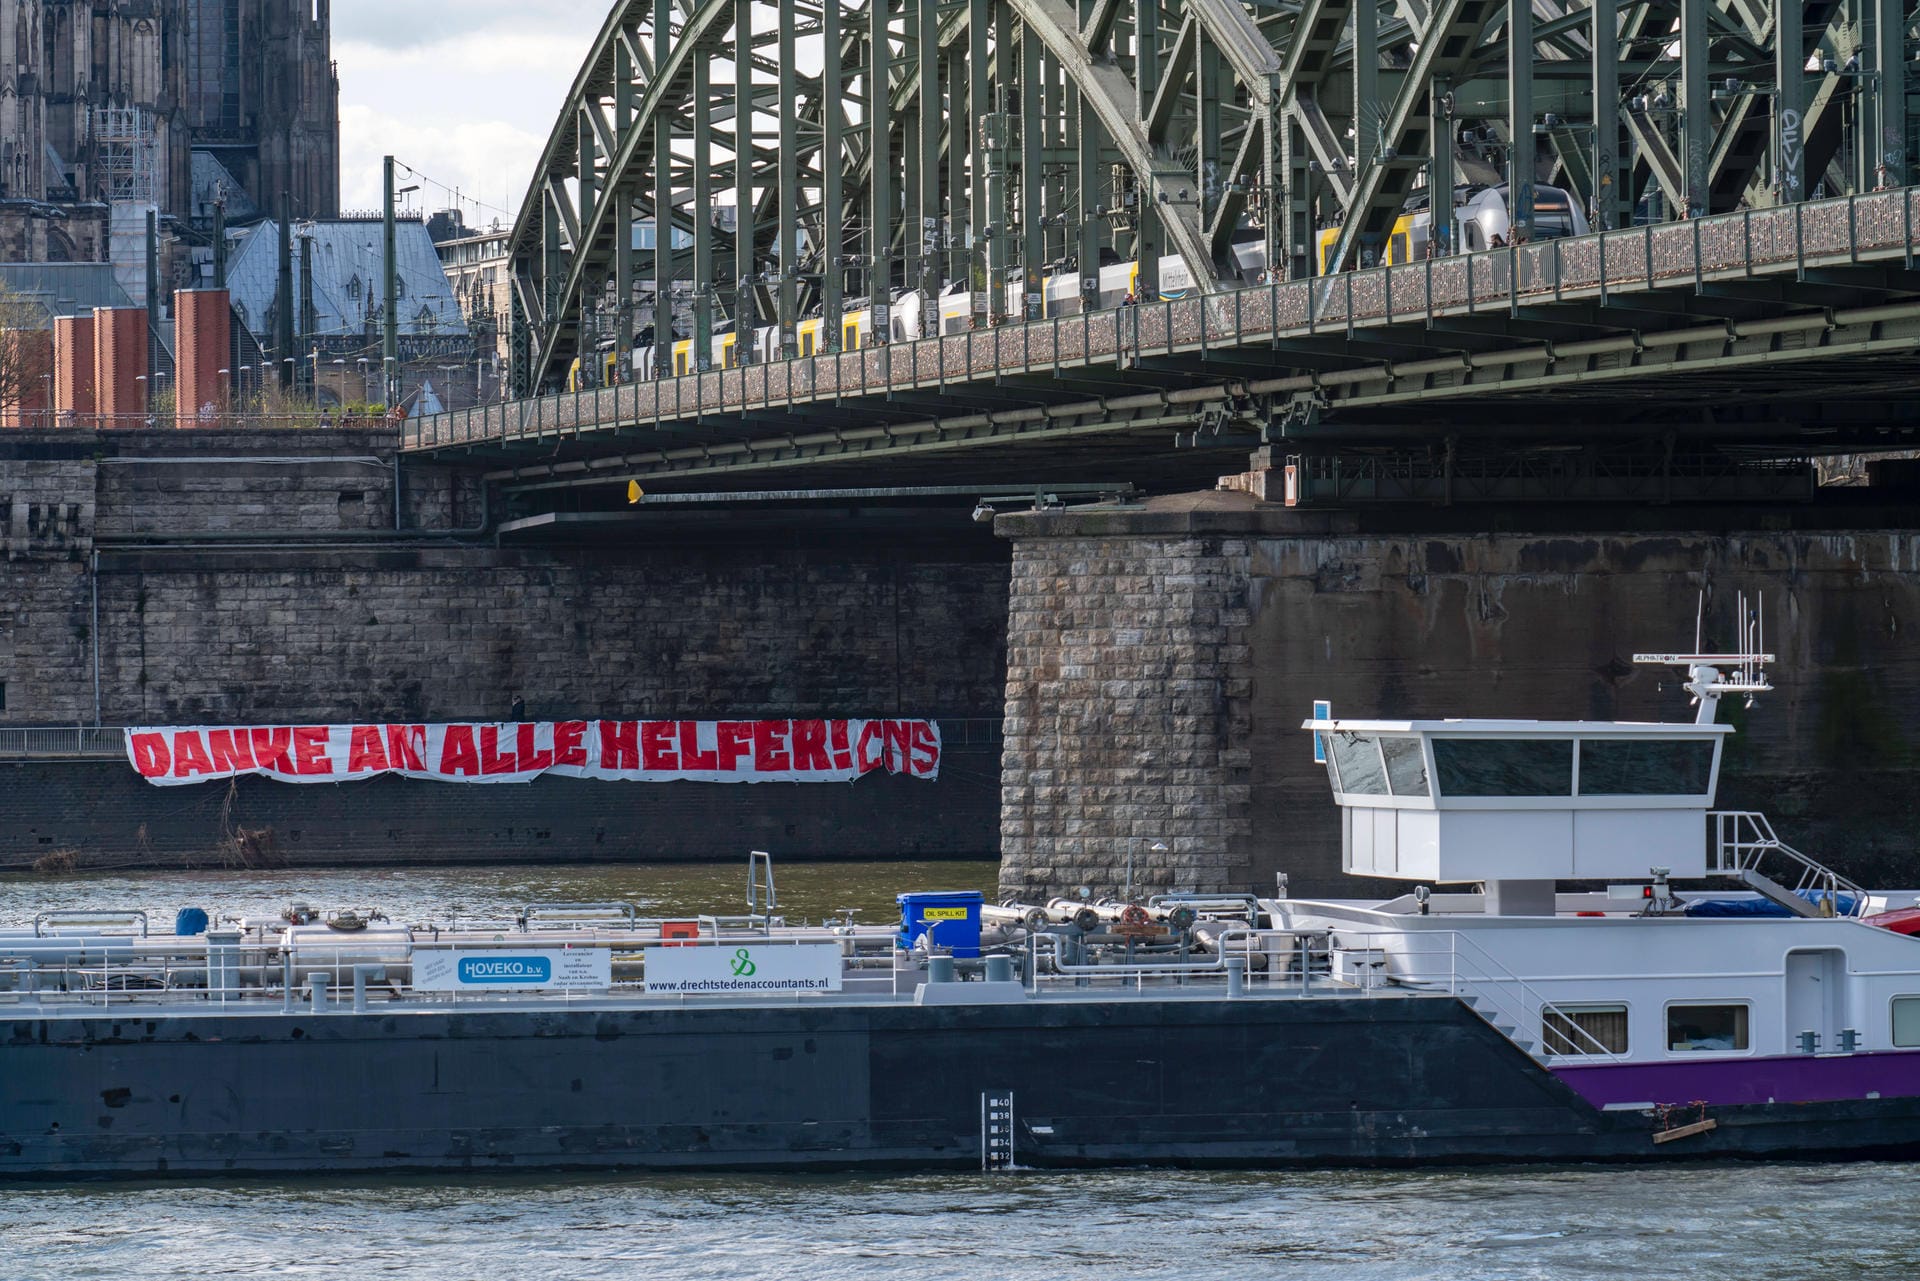 Auch am Rheinufer in Köln bedanken sich die Fans mit einem Banner bei den Helfern.